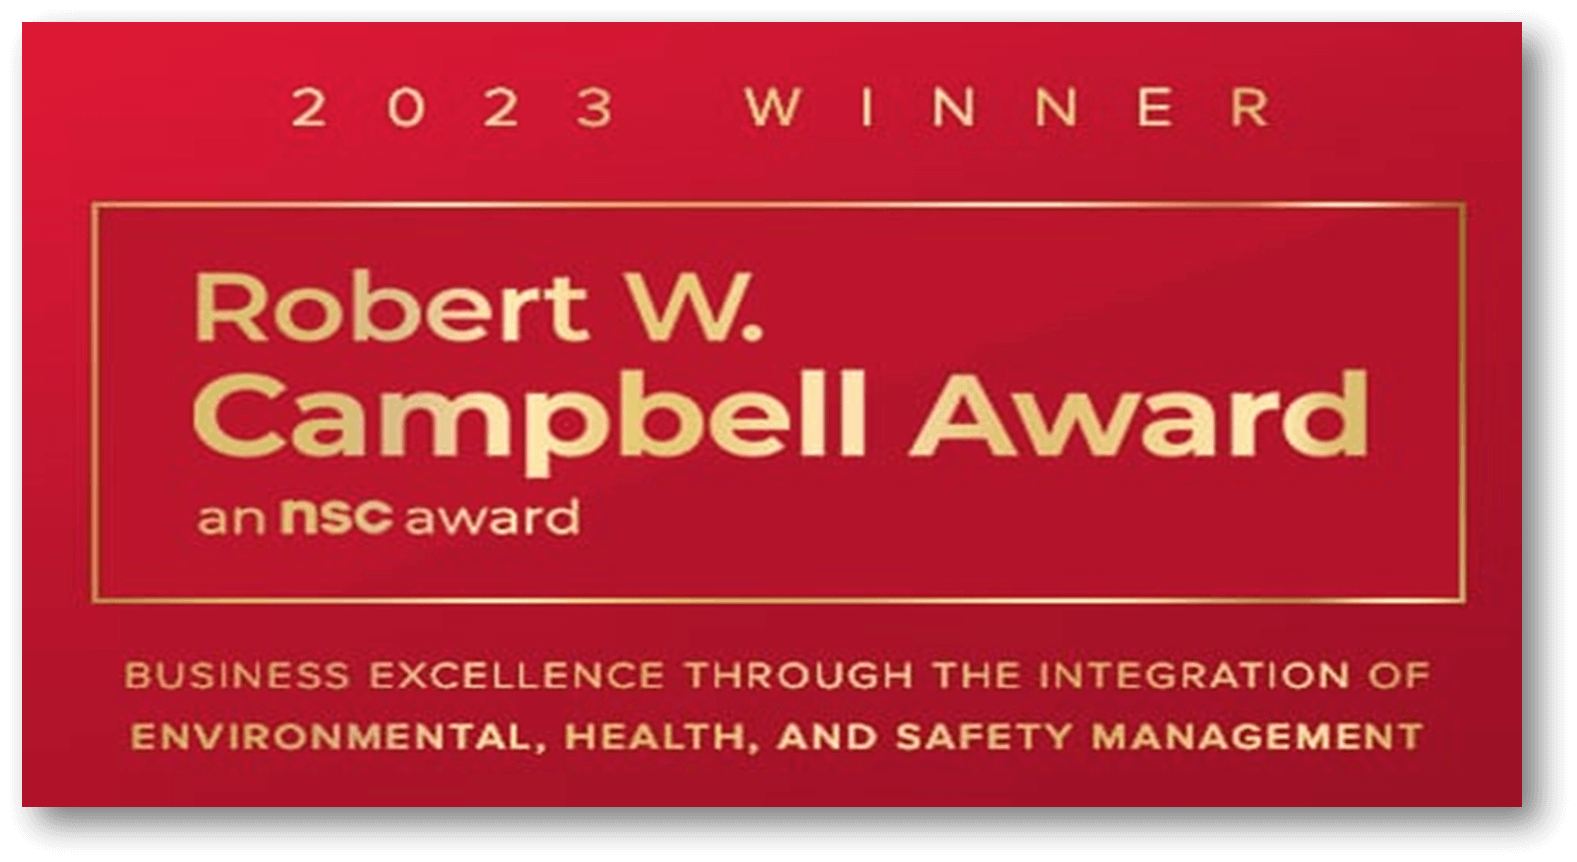 robert-campbell-award.png